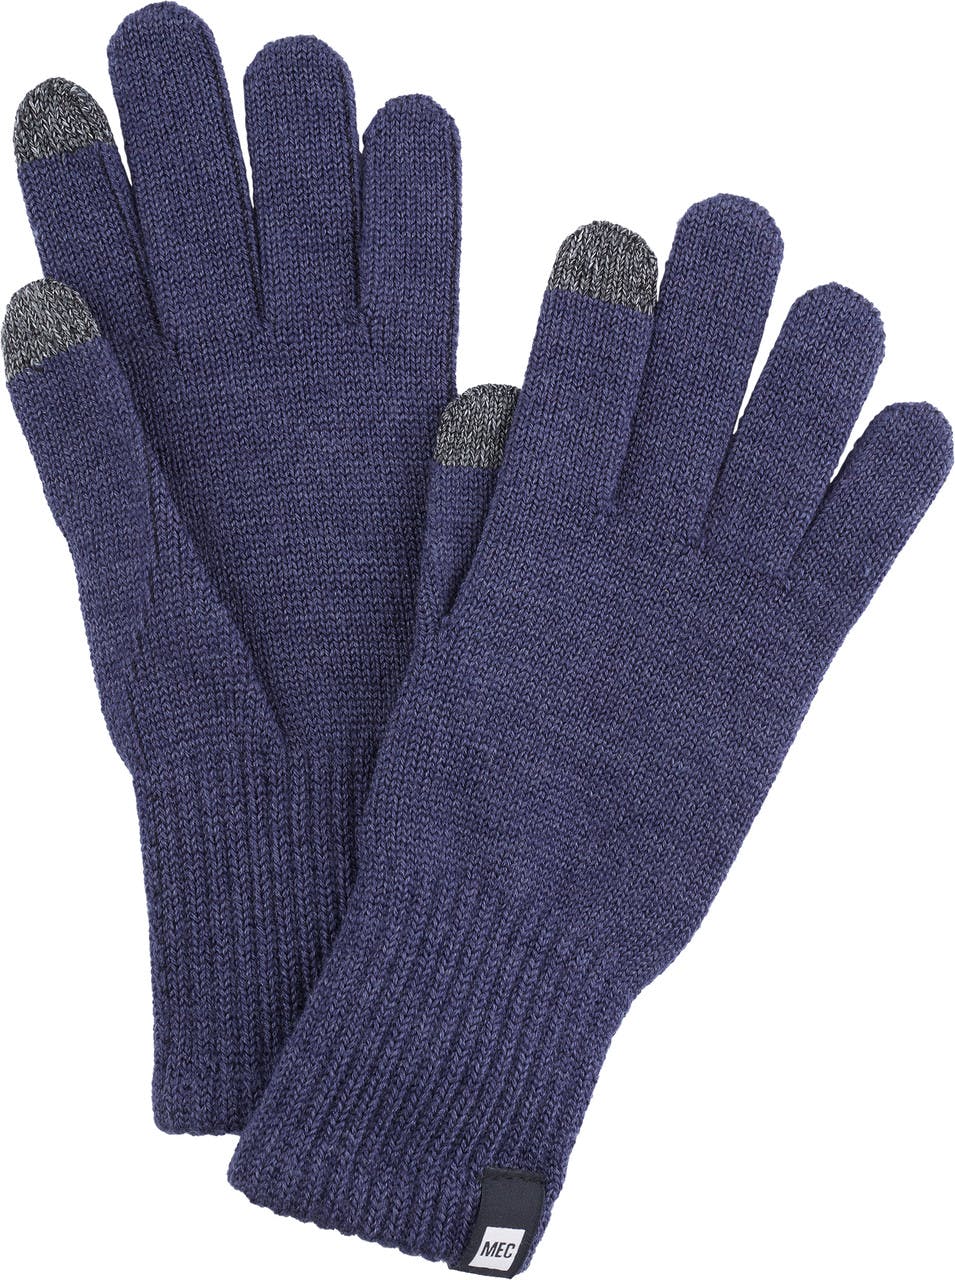 Merino Liner Gloves Moonlight Blue Heather